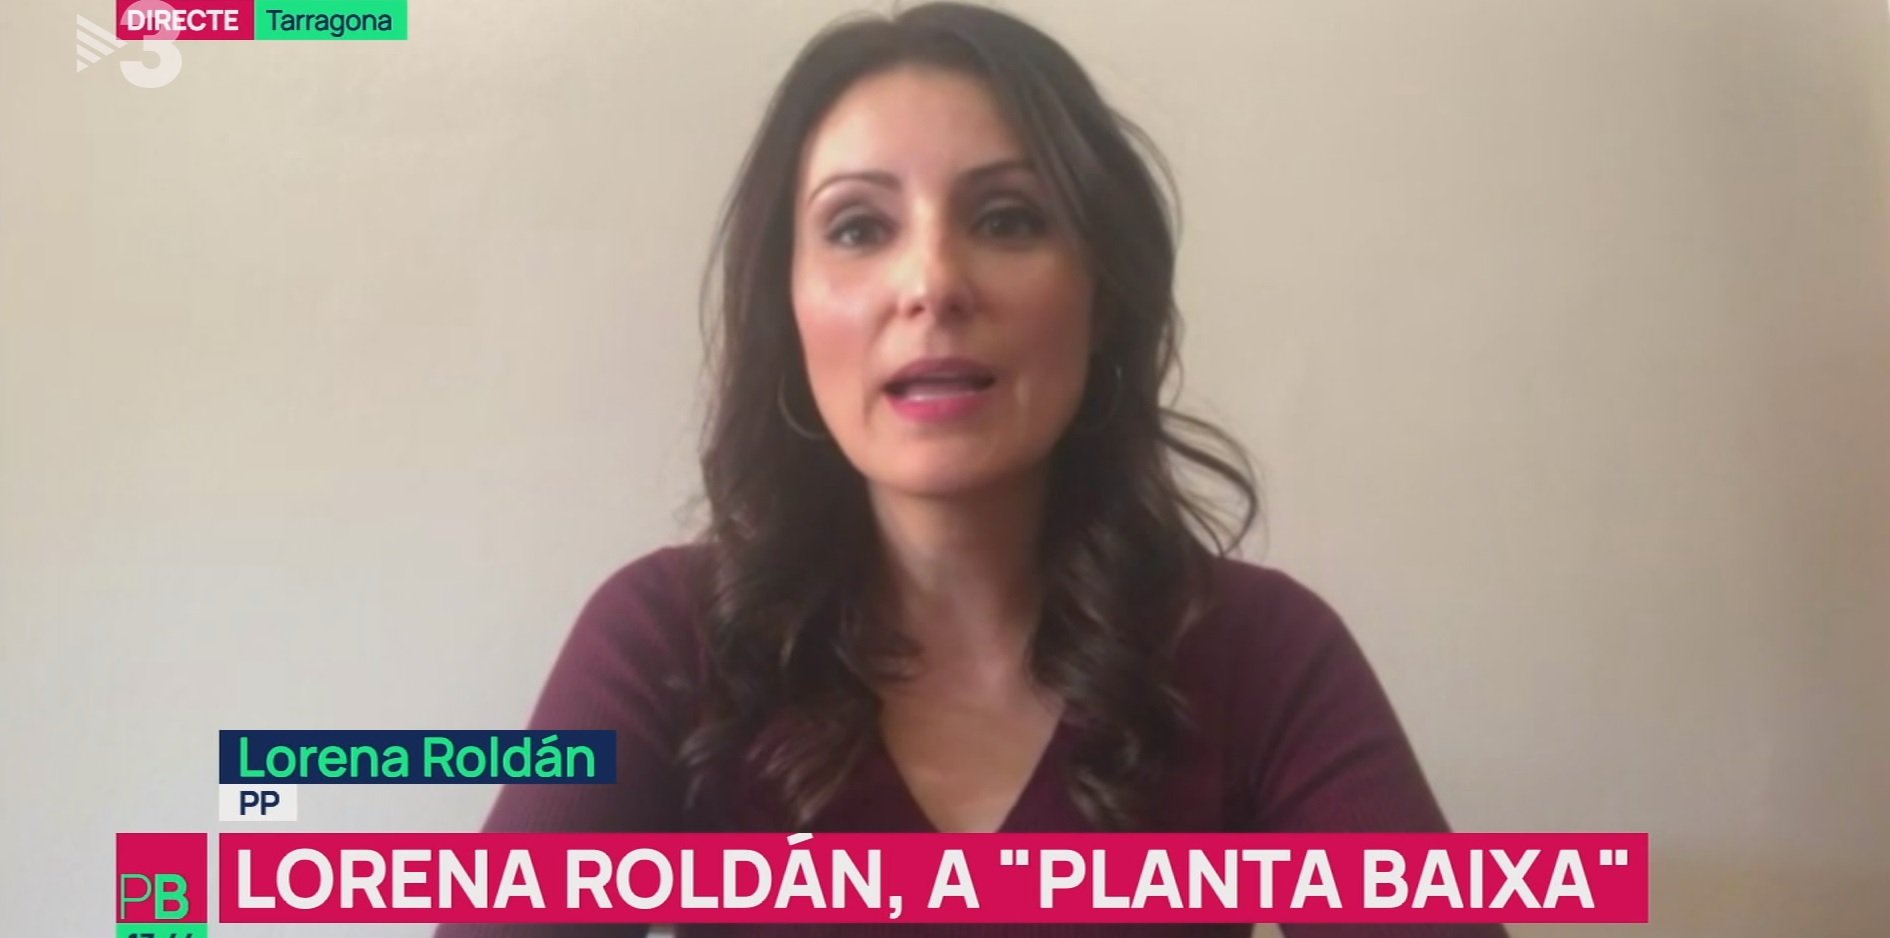 Lorena Roldán al programa d'Ustrell després de posar a parir Puigdemont a TV3